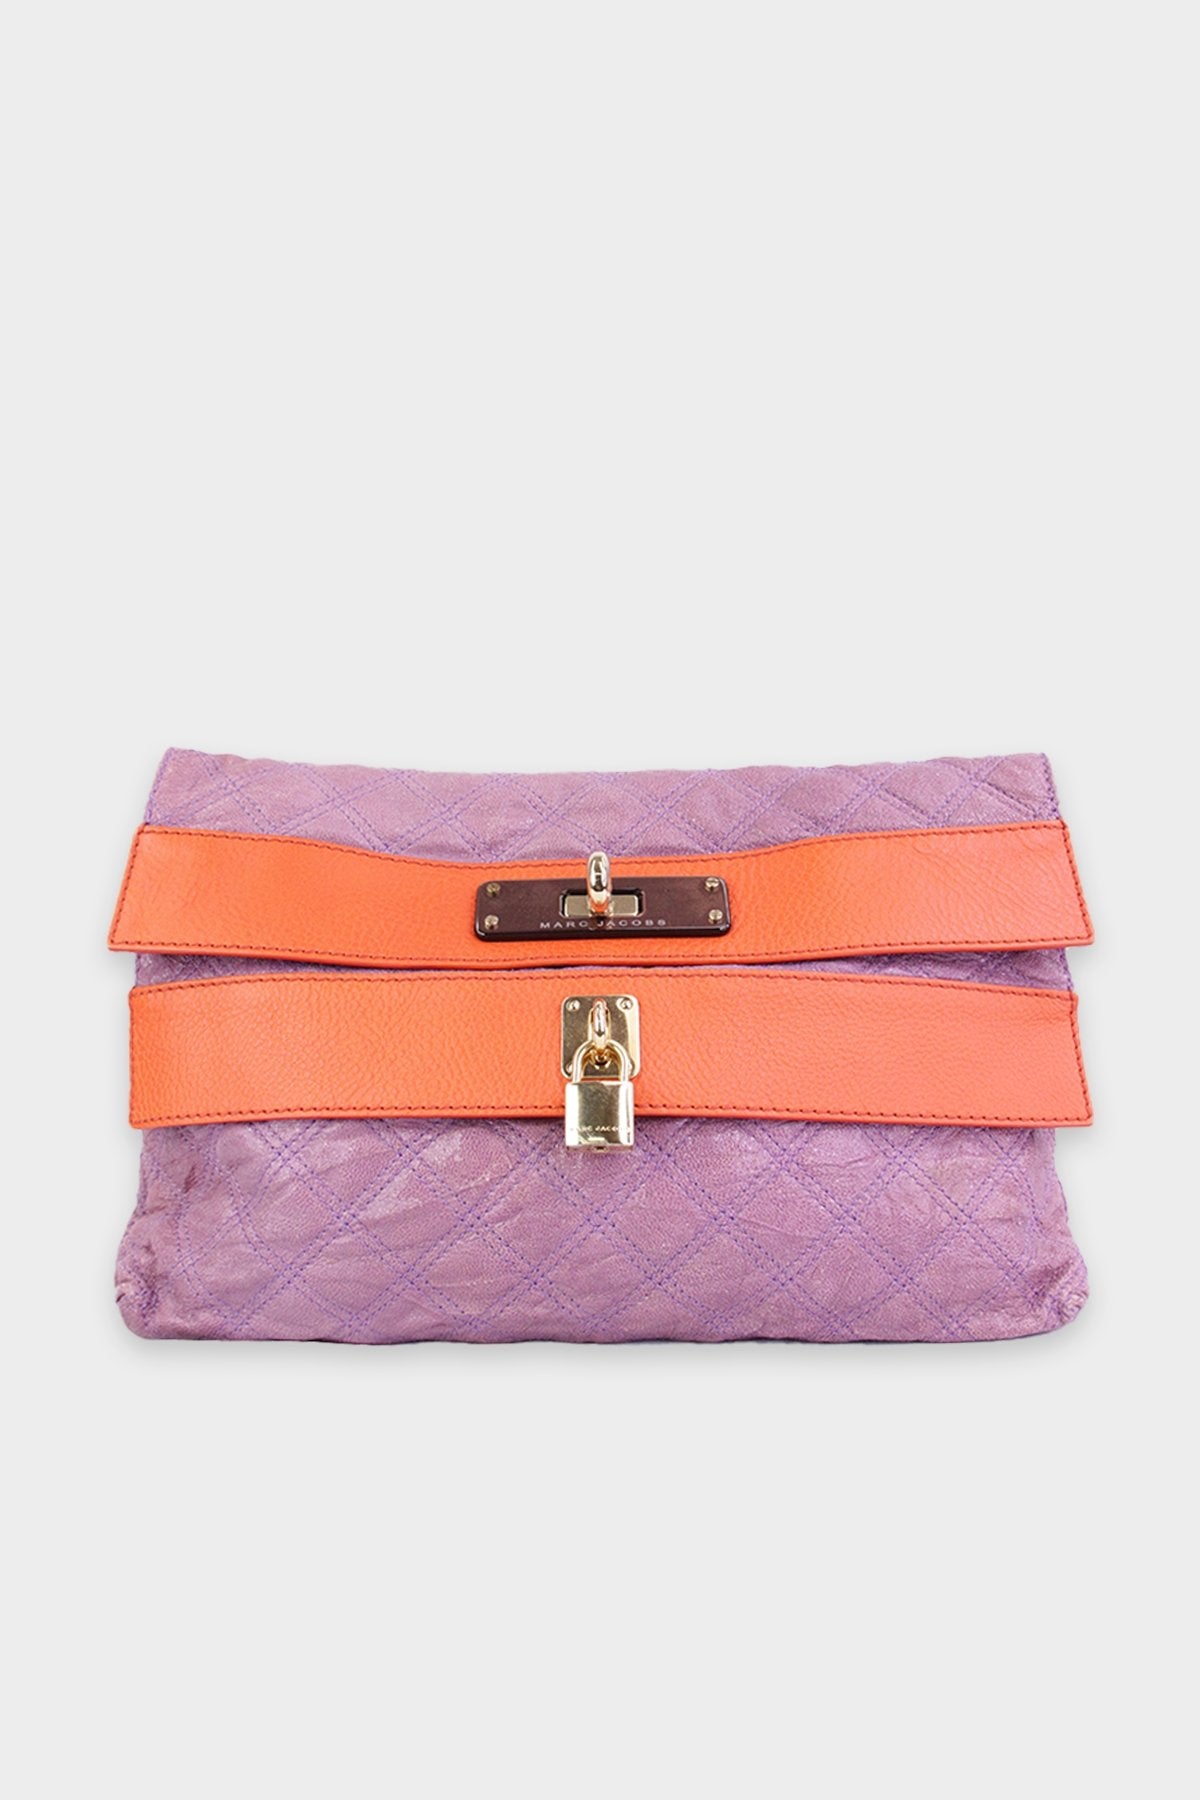 Marc Jacobs Purple & Orange Large Clutch